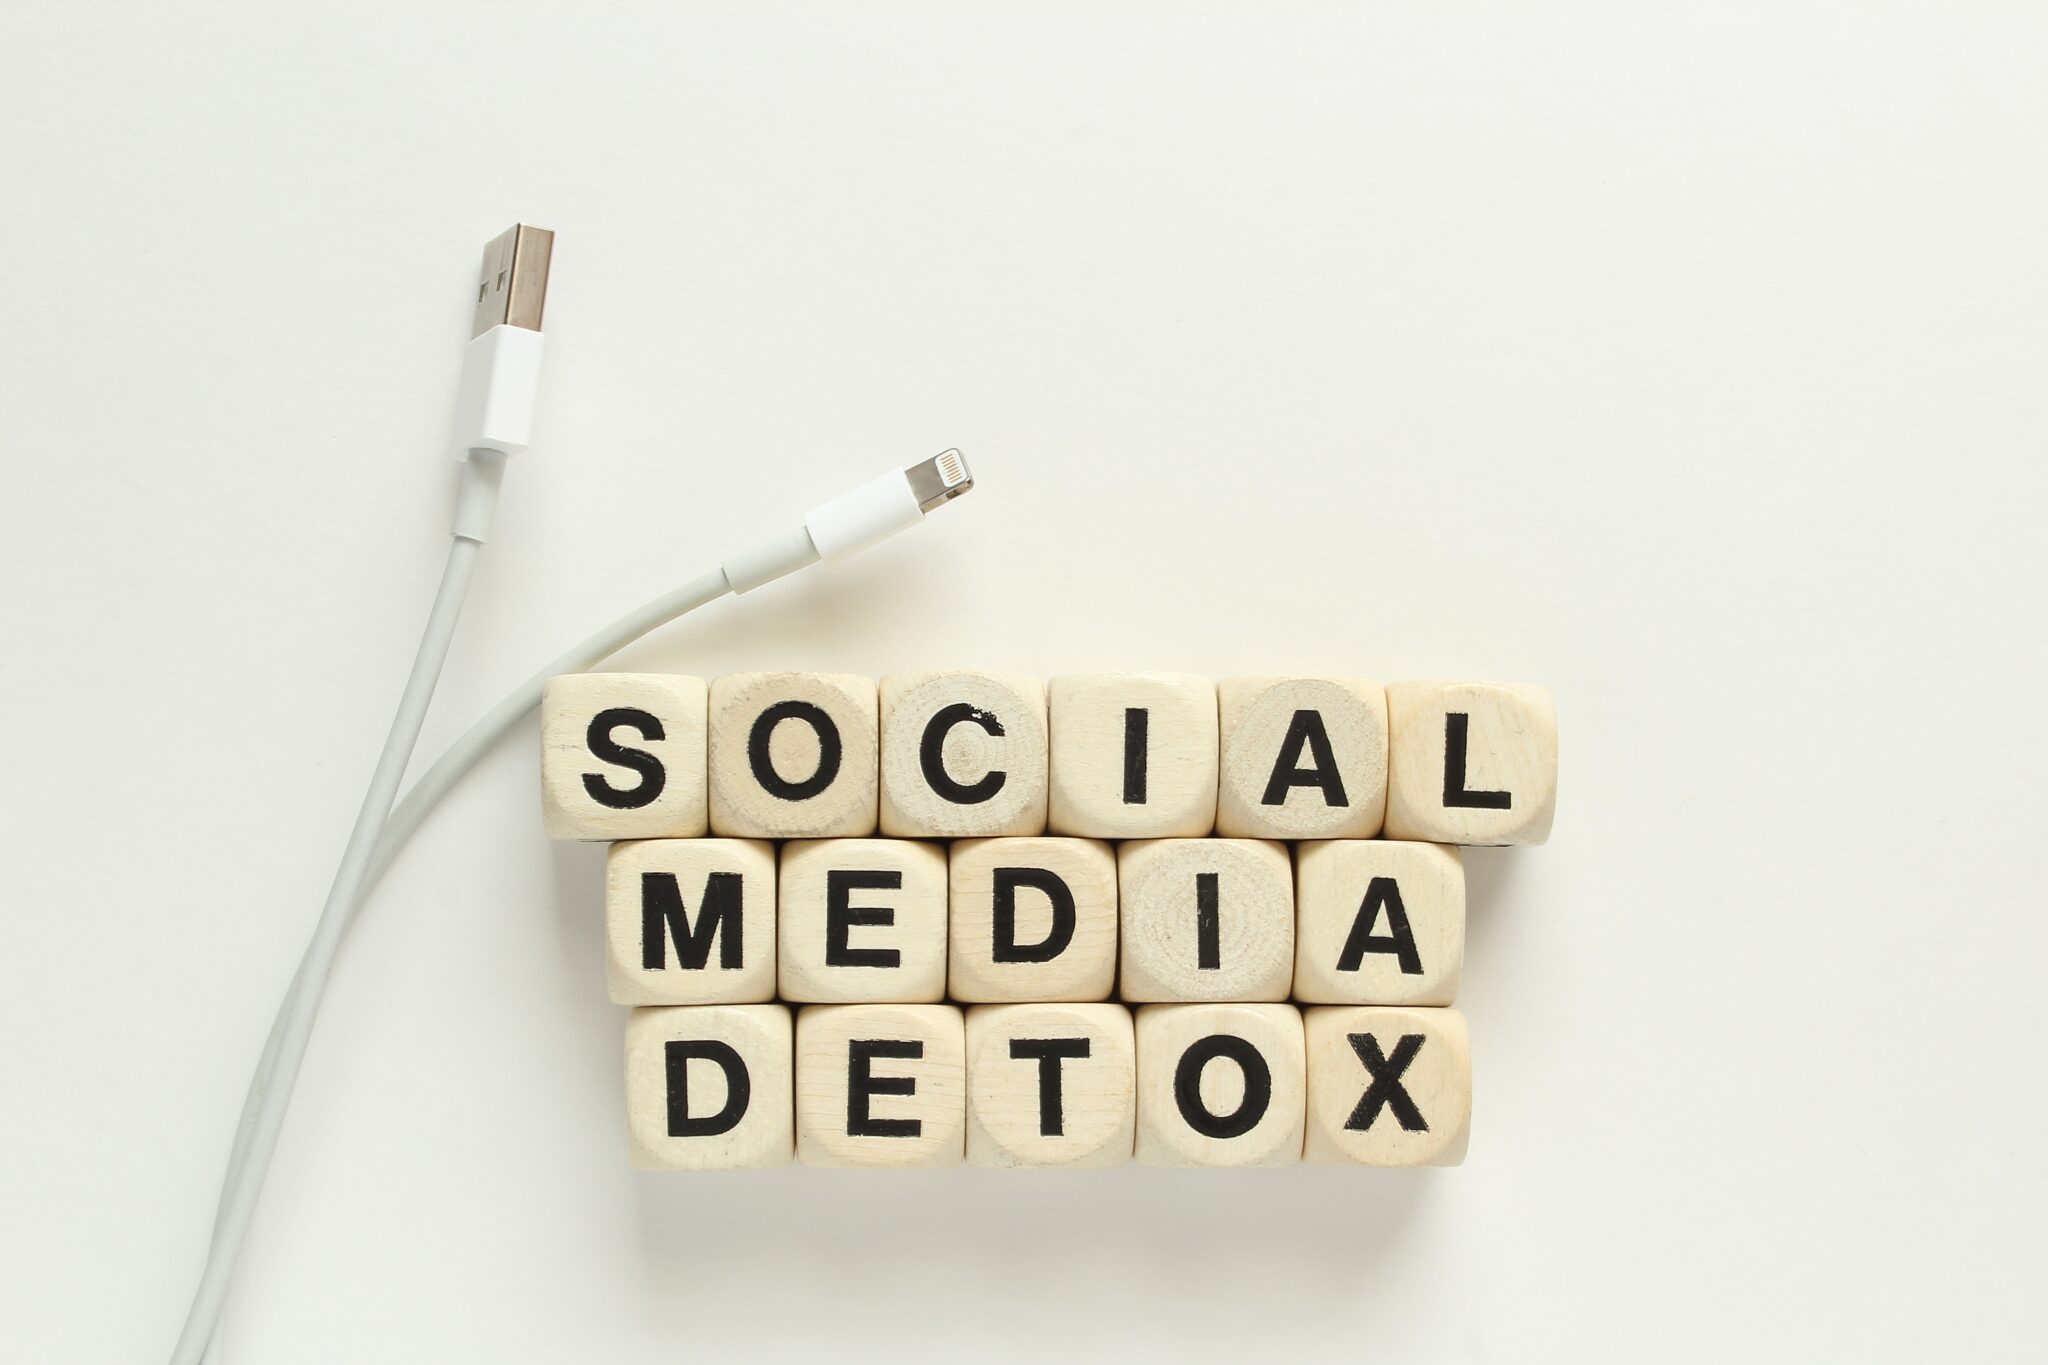 Detox social media